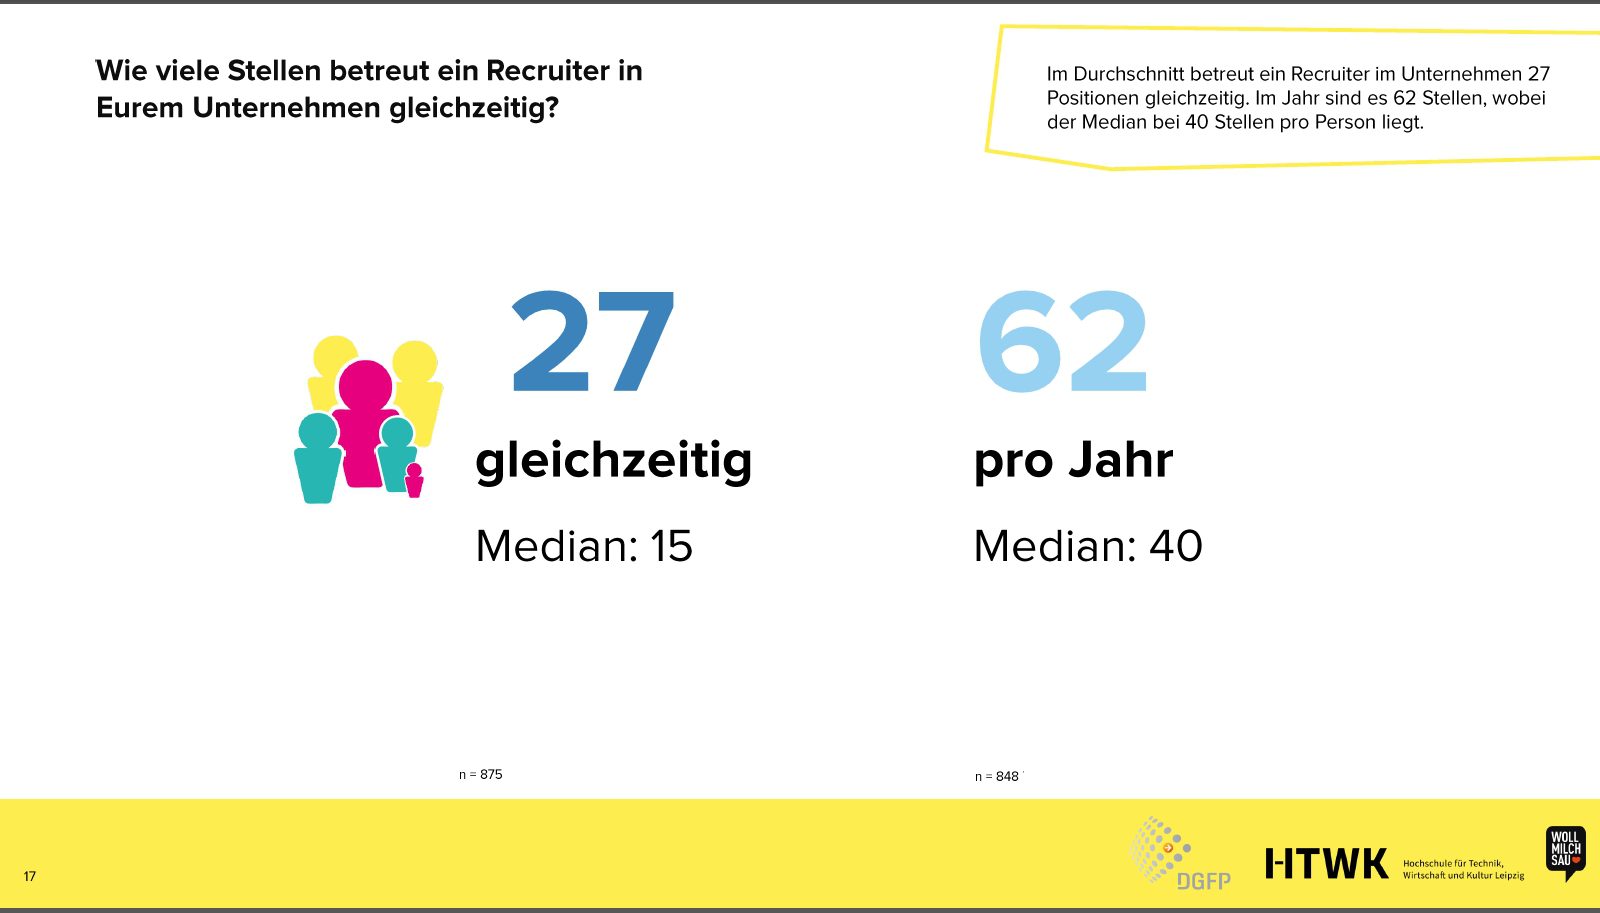 Durchschnittlich betreut ein Recruiter 27 Stellen gleichzeitig - Recruiting Benchmark 2022